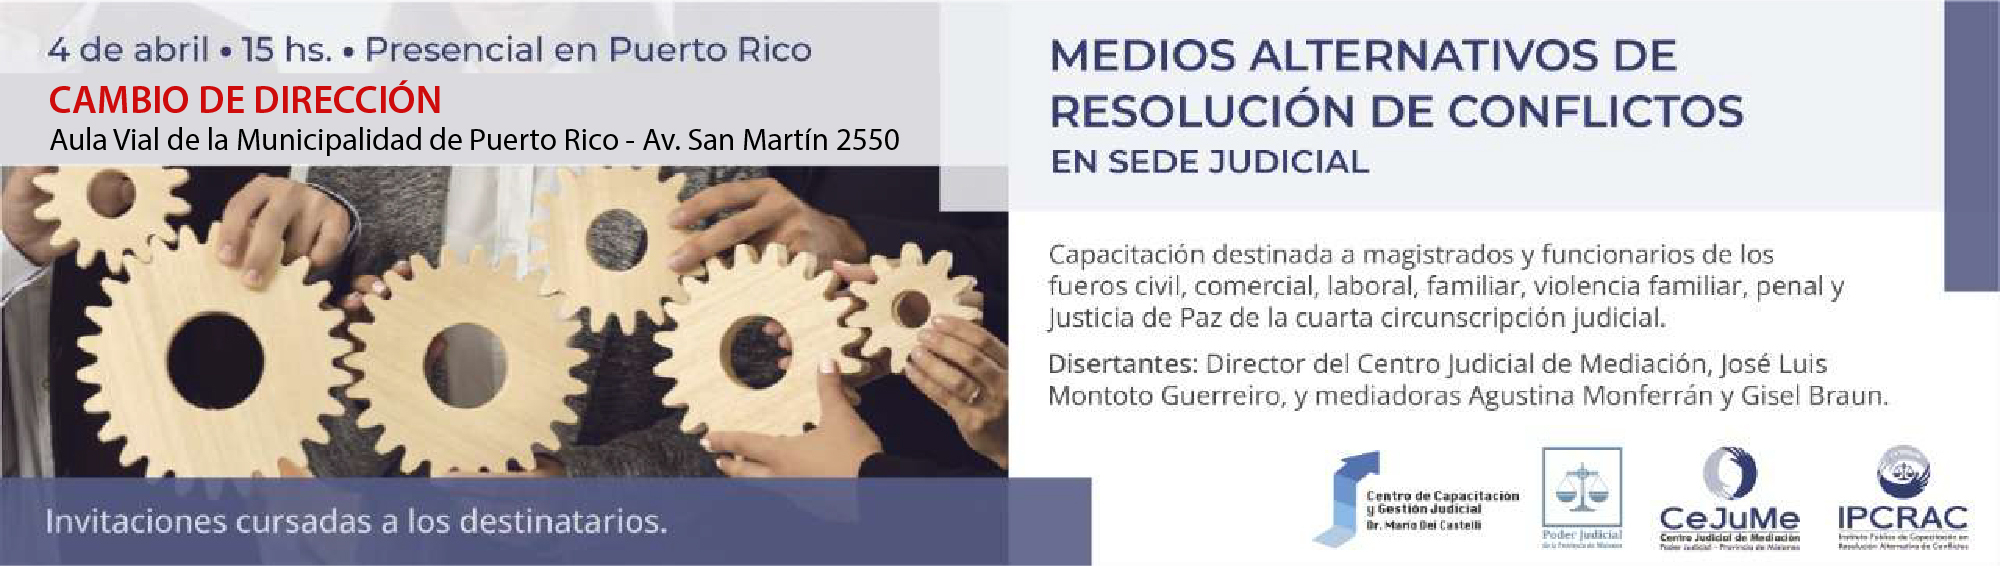 Cr_Resolucion_de_conflictos-01